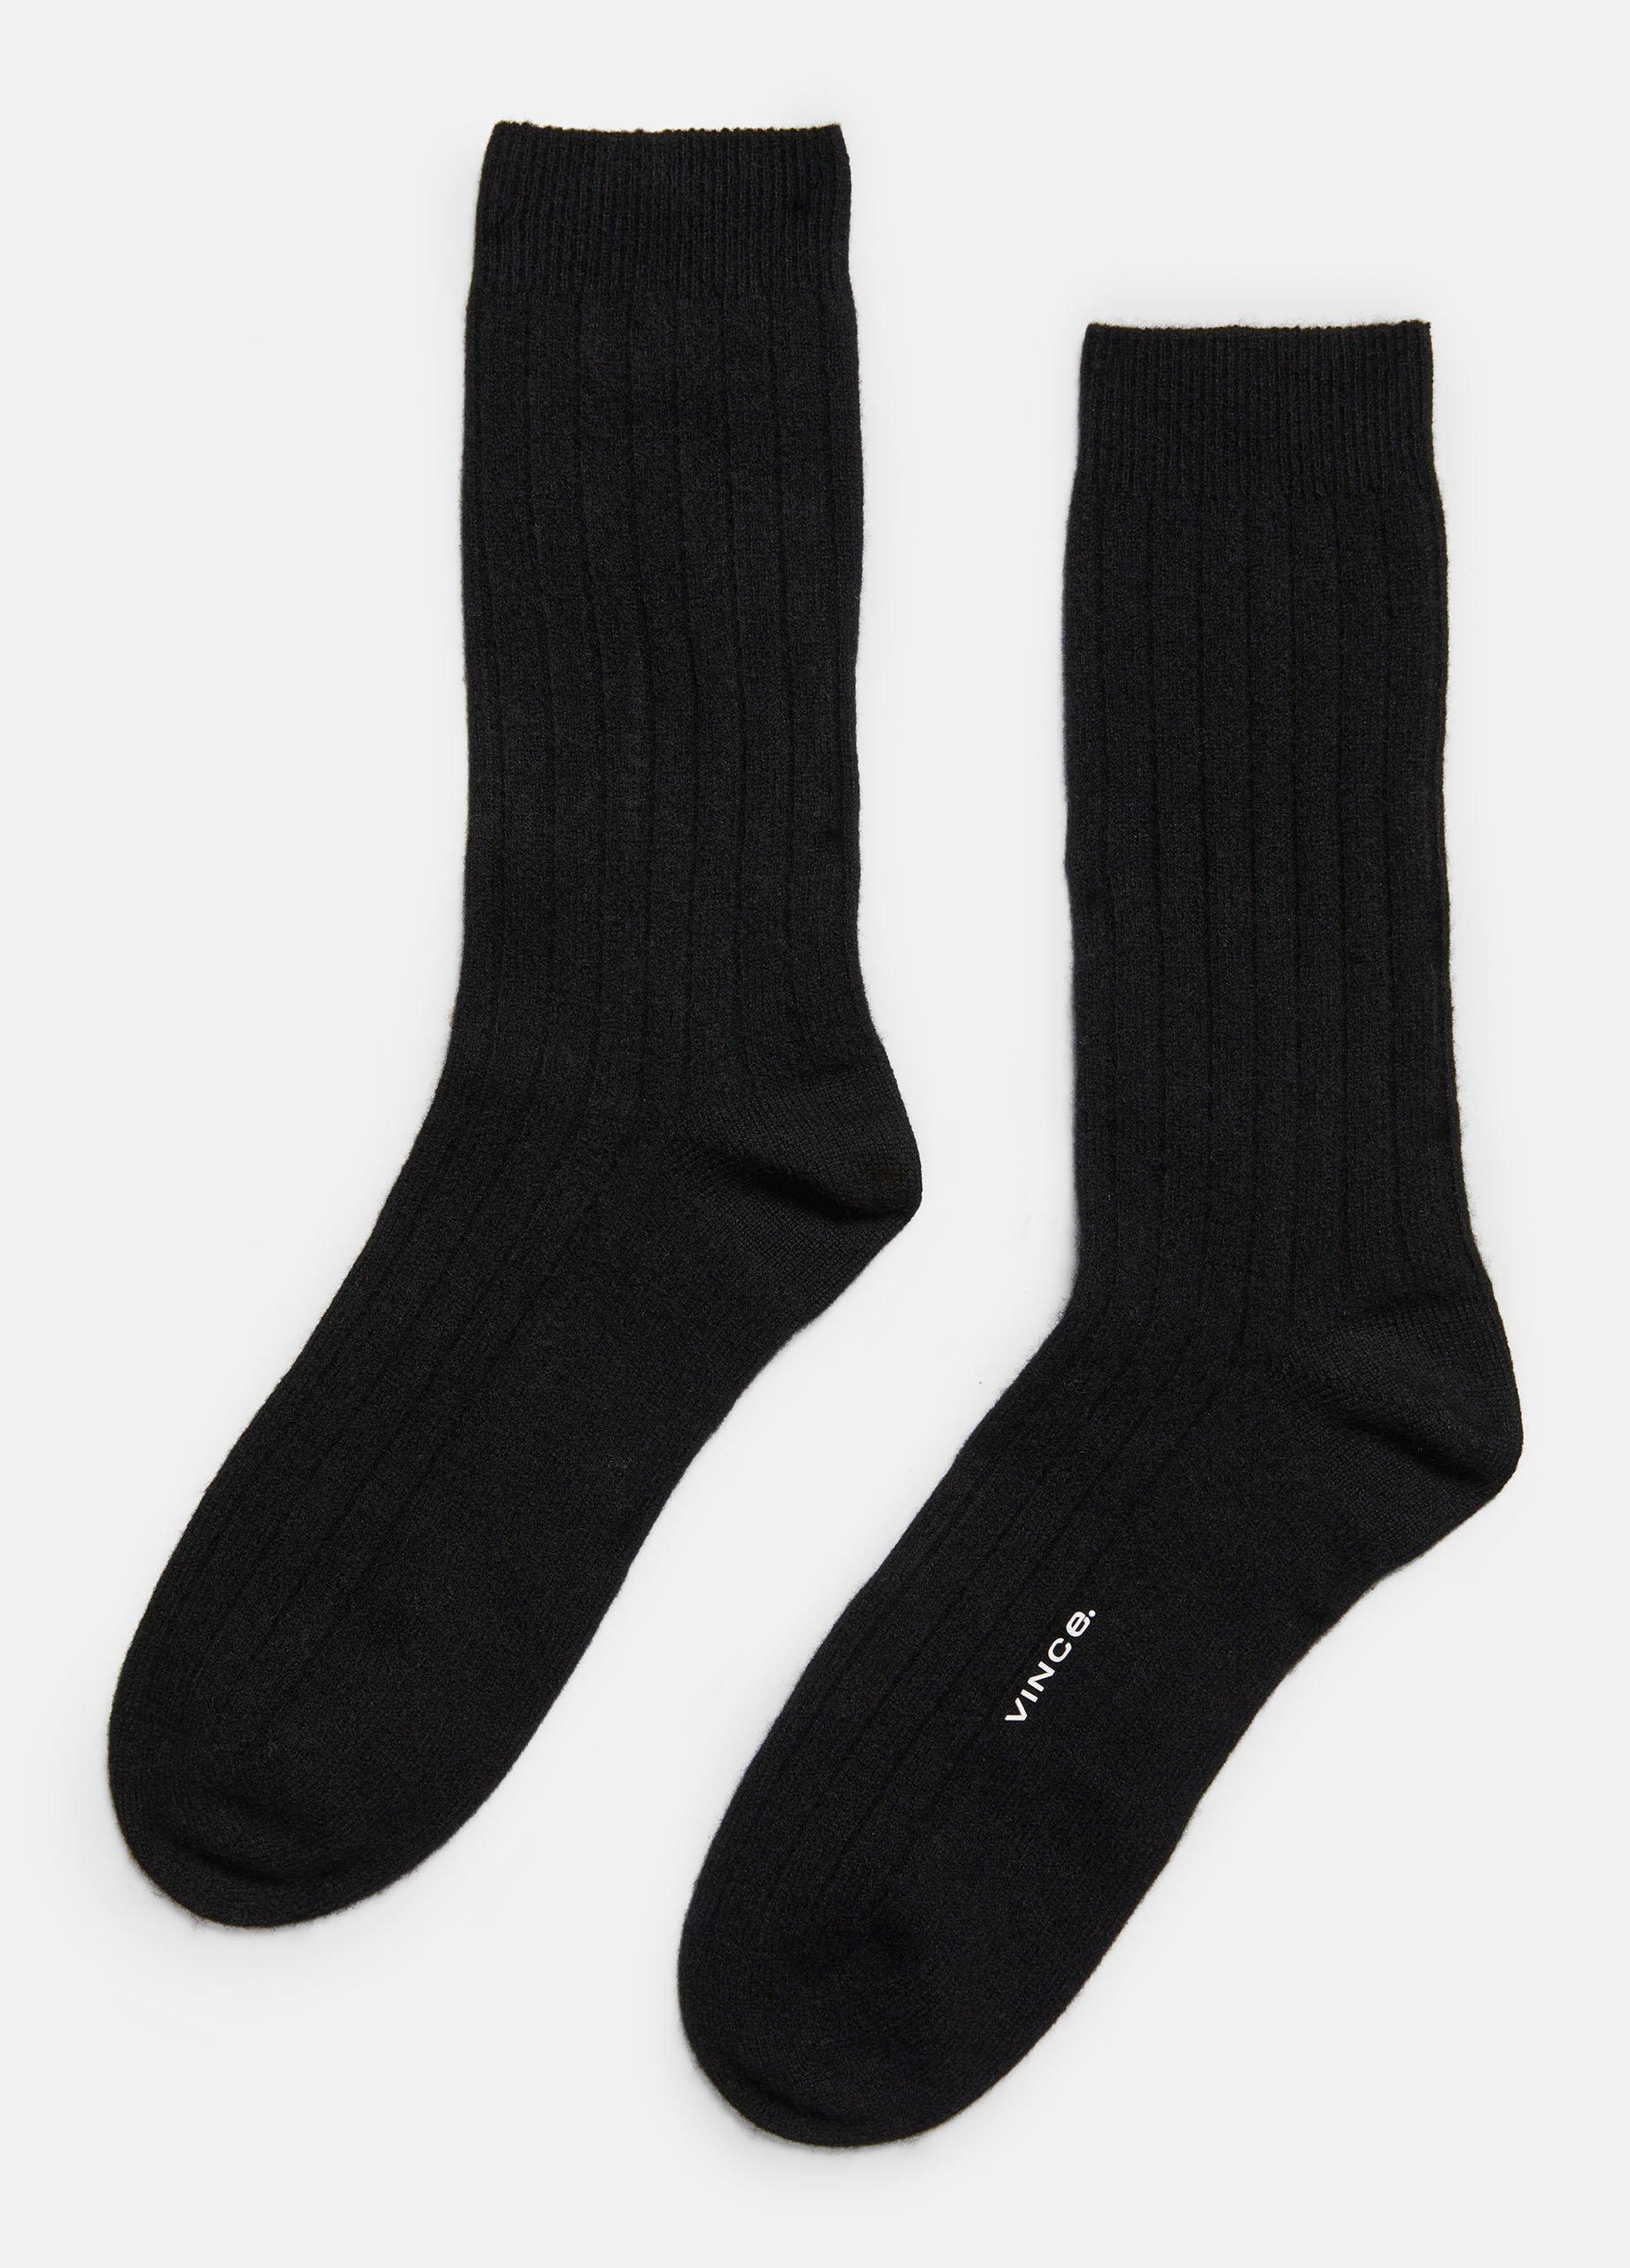 Cashmere Rib Sock, Black, Size S/M Vince